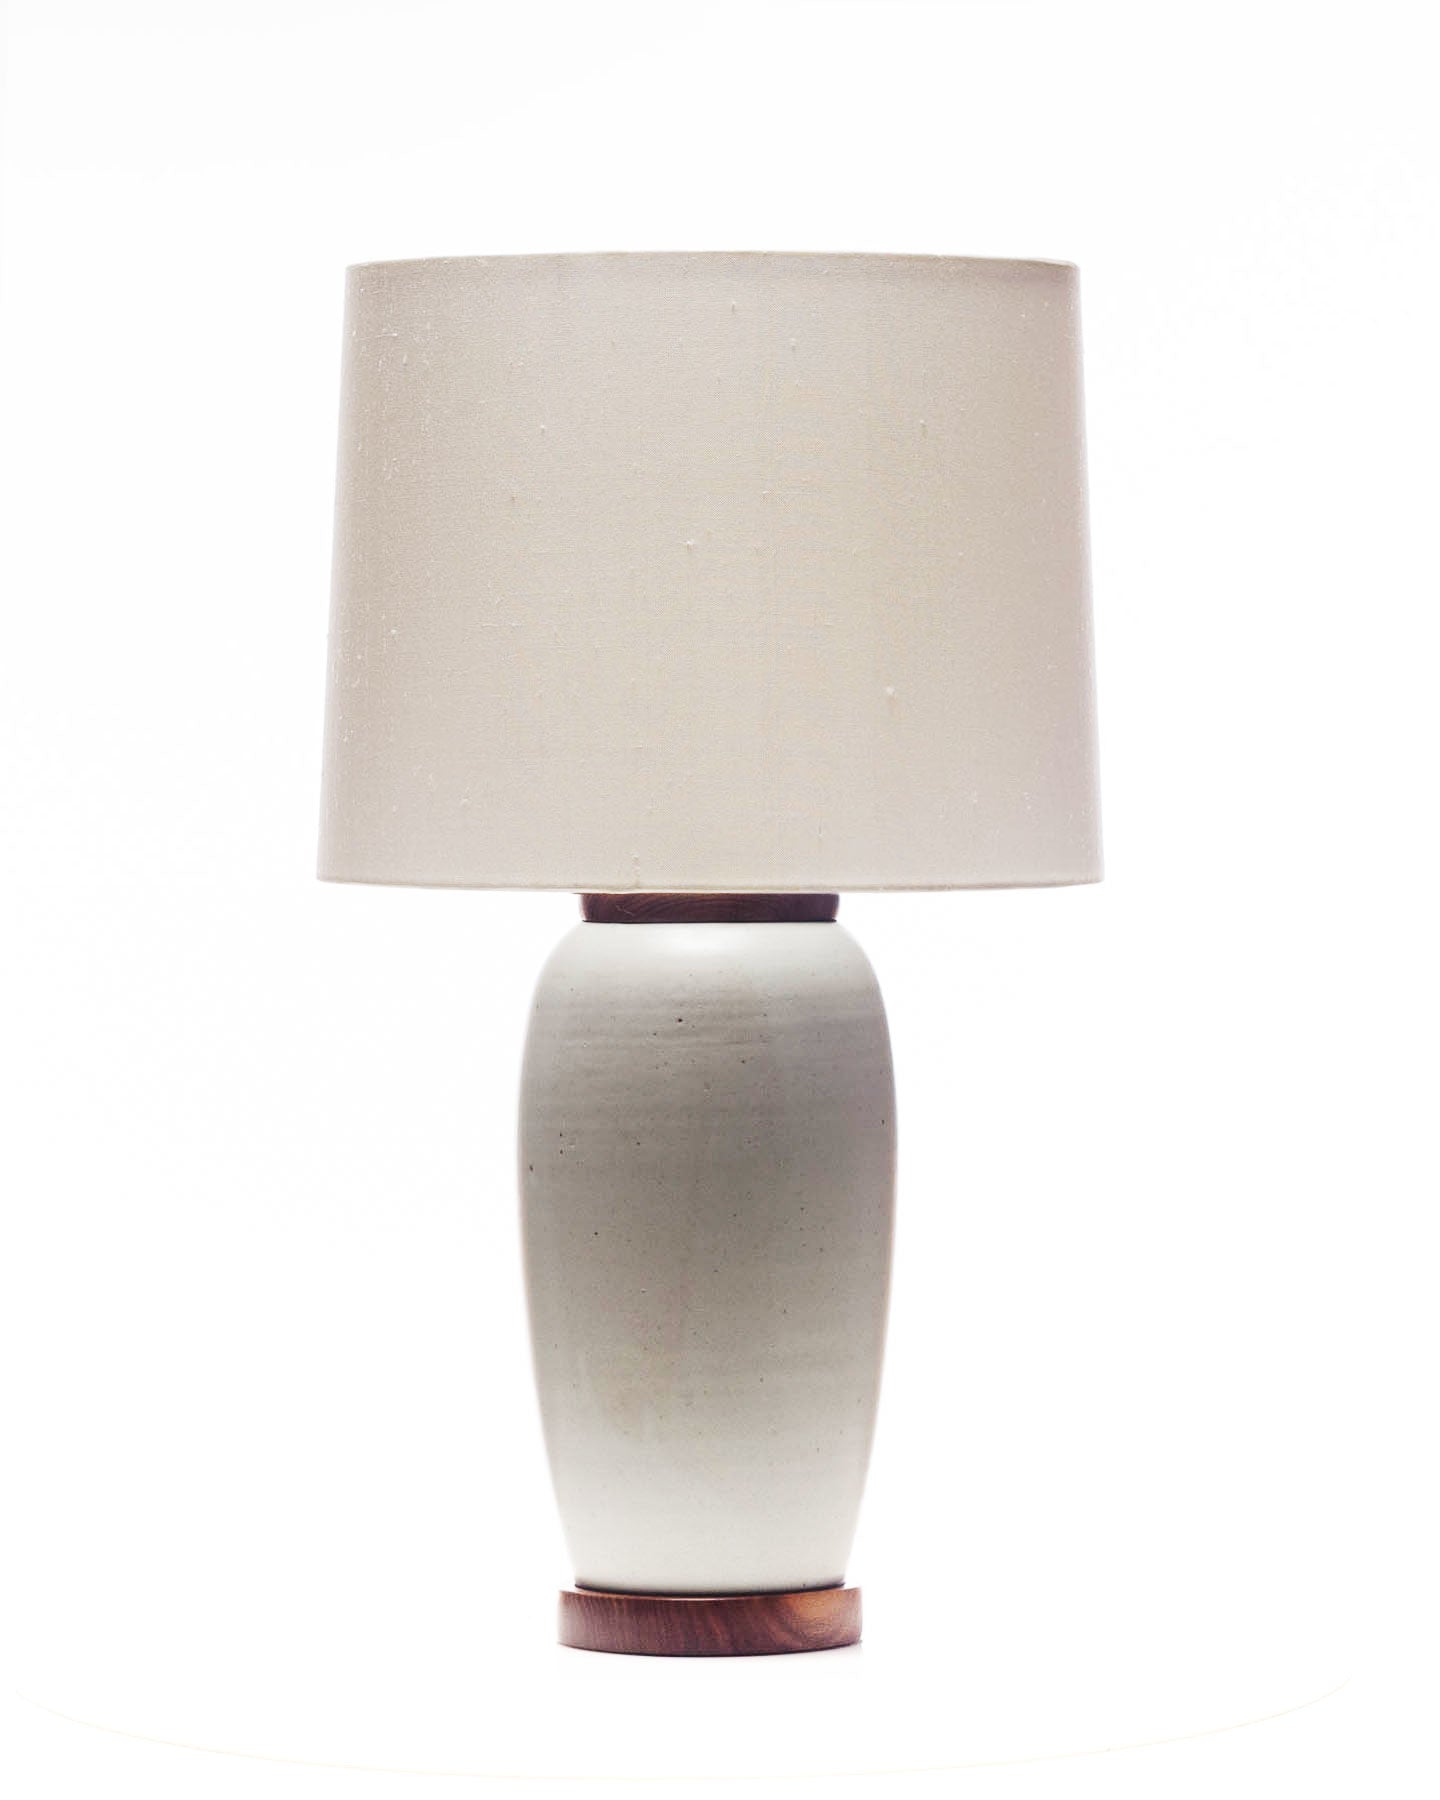 Lawrence & Scott Holden Porcelain Table Lamp (Walnut)